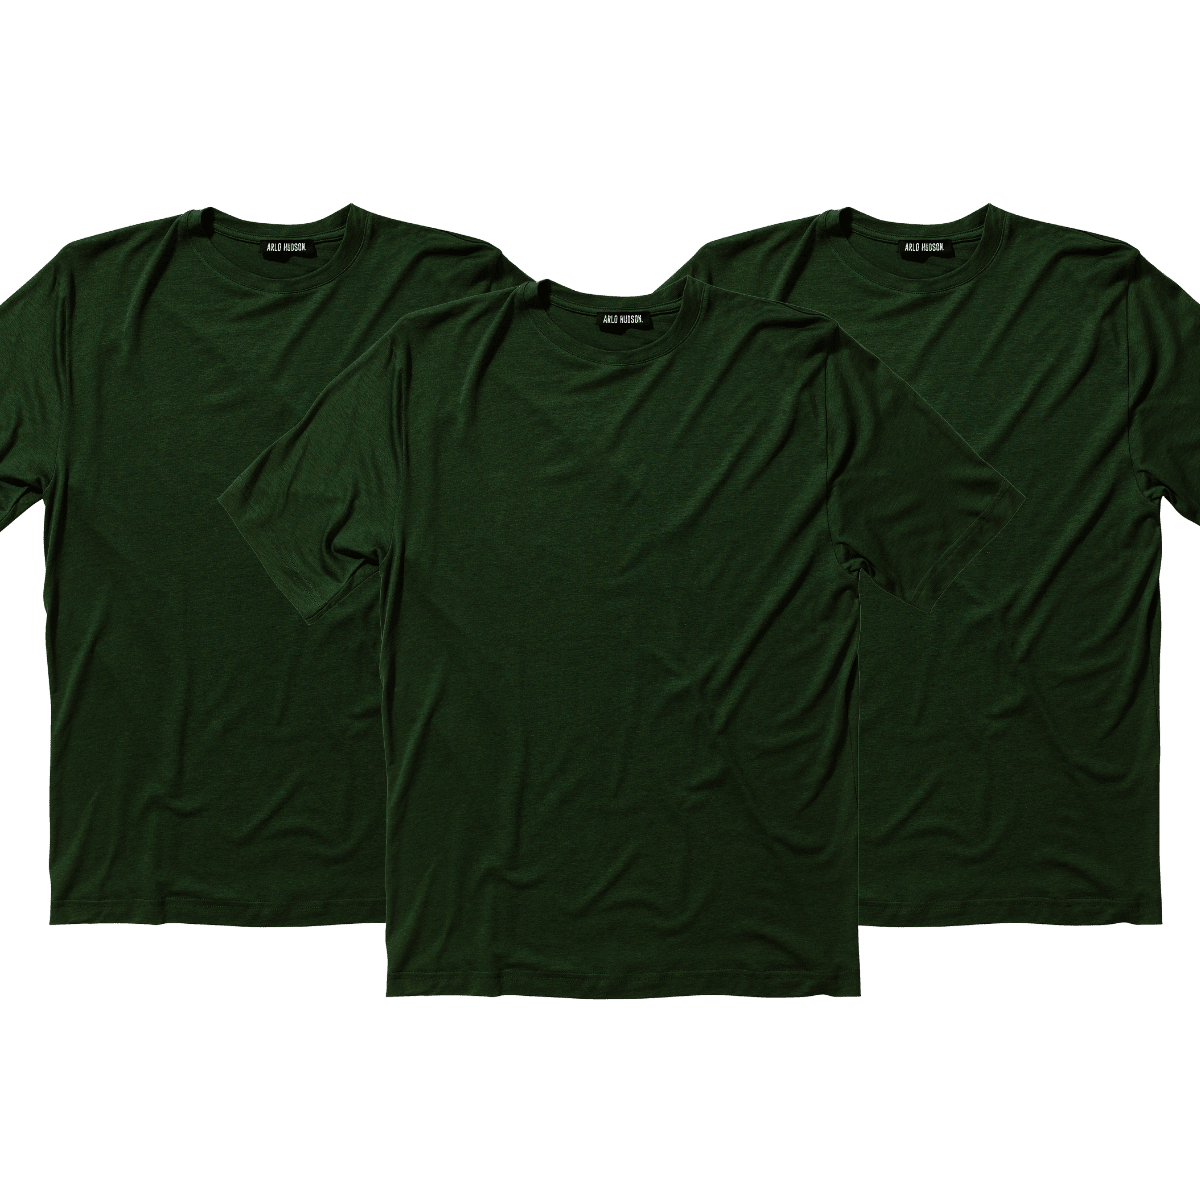 3 Pack T-Shirt – Arlo Hudson.